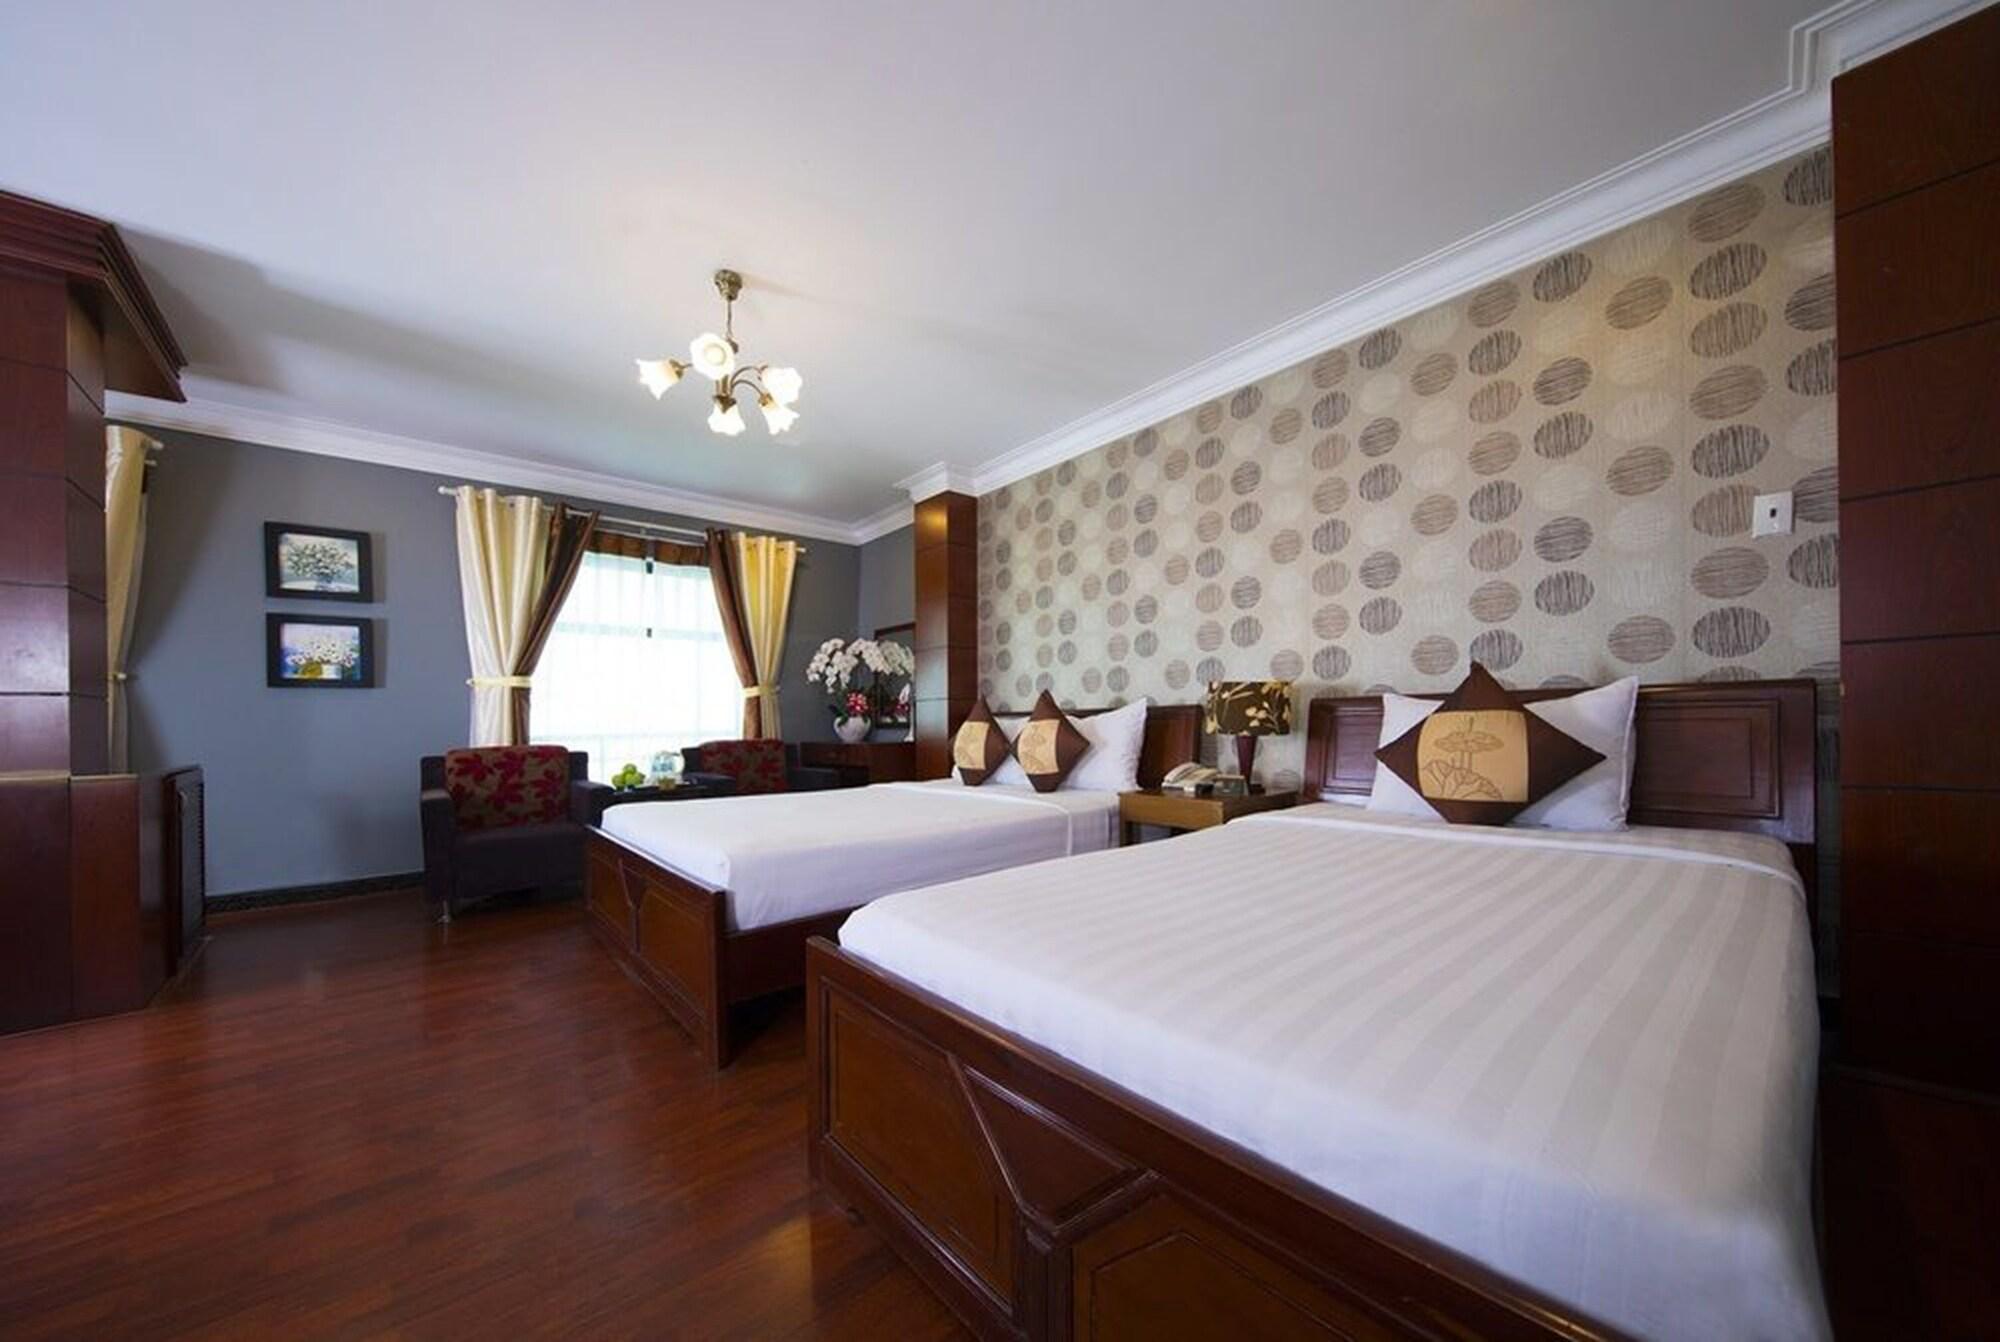 Good Vibes Central Hotel Ho Chi Minh-Byen Eksteriør billede